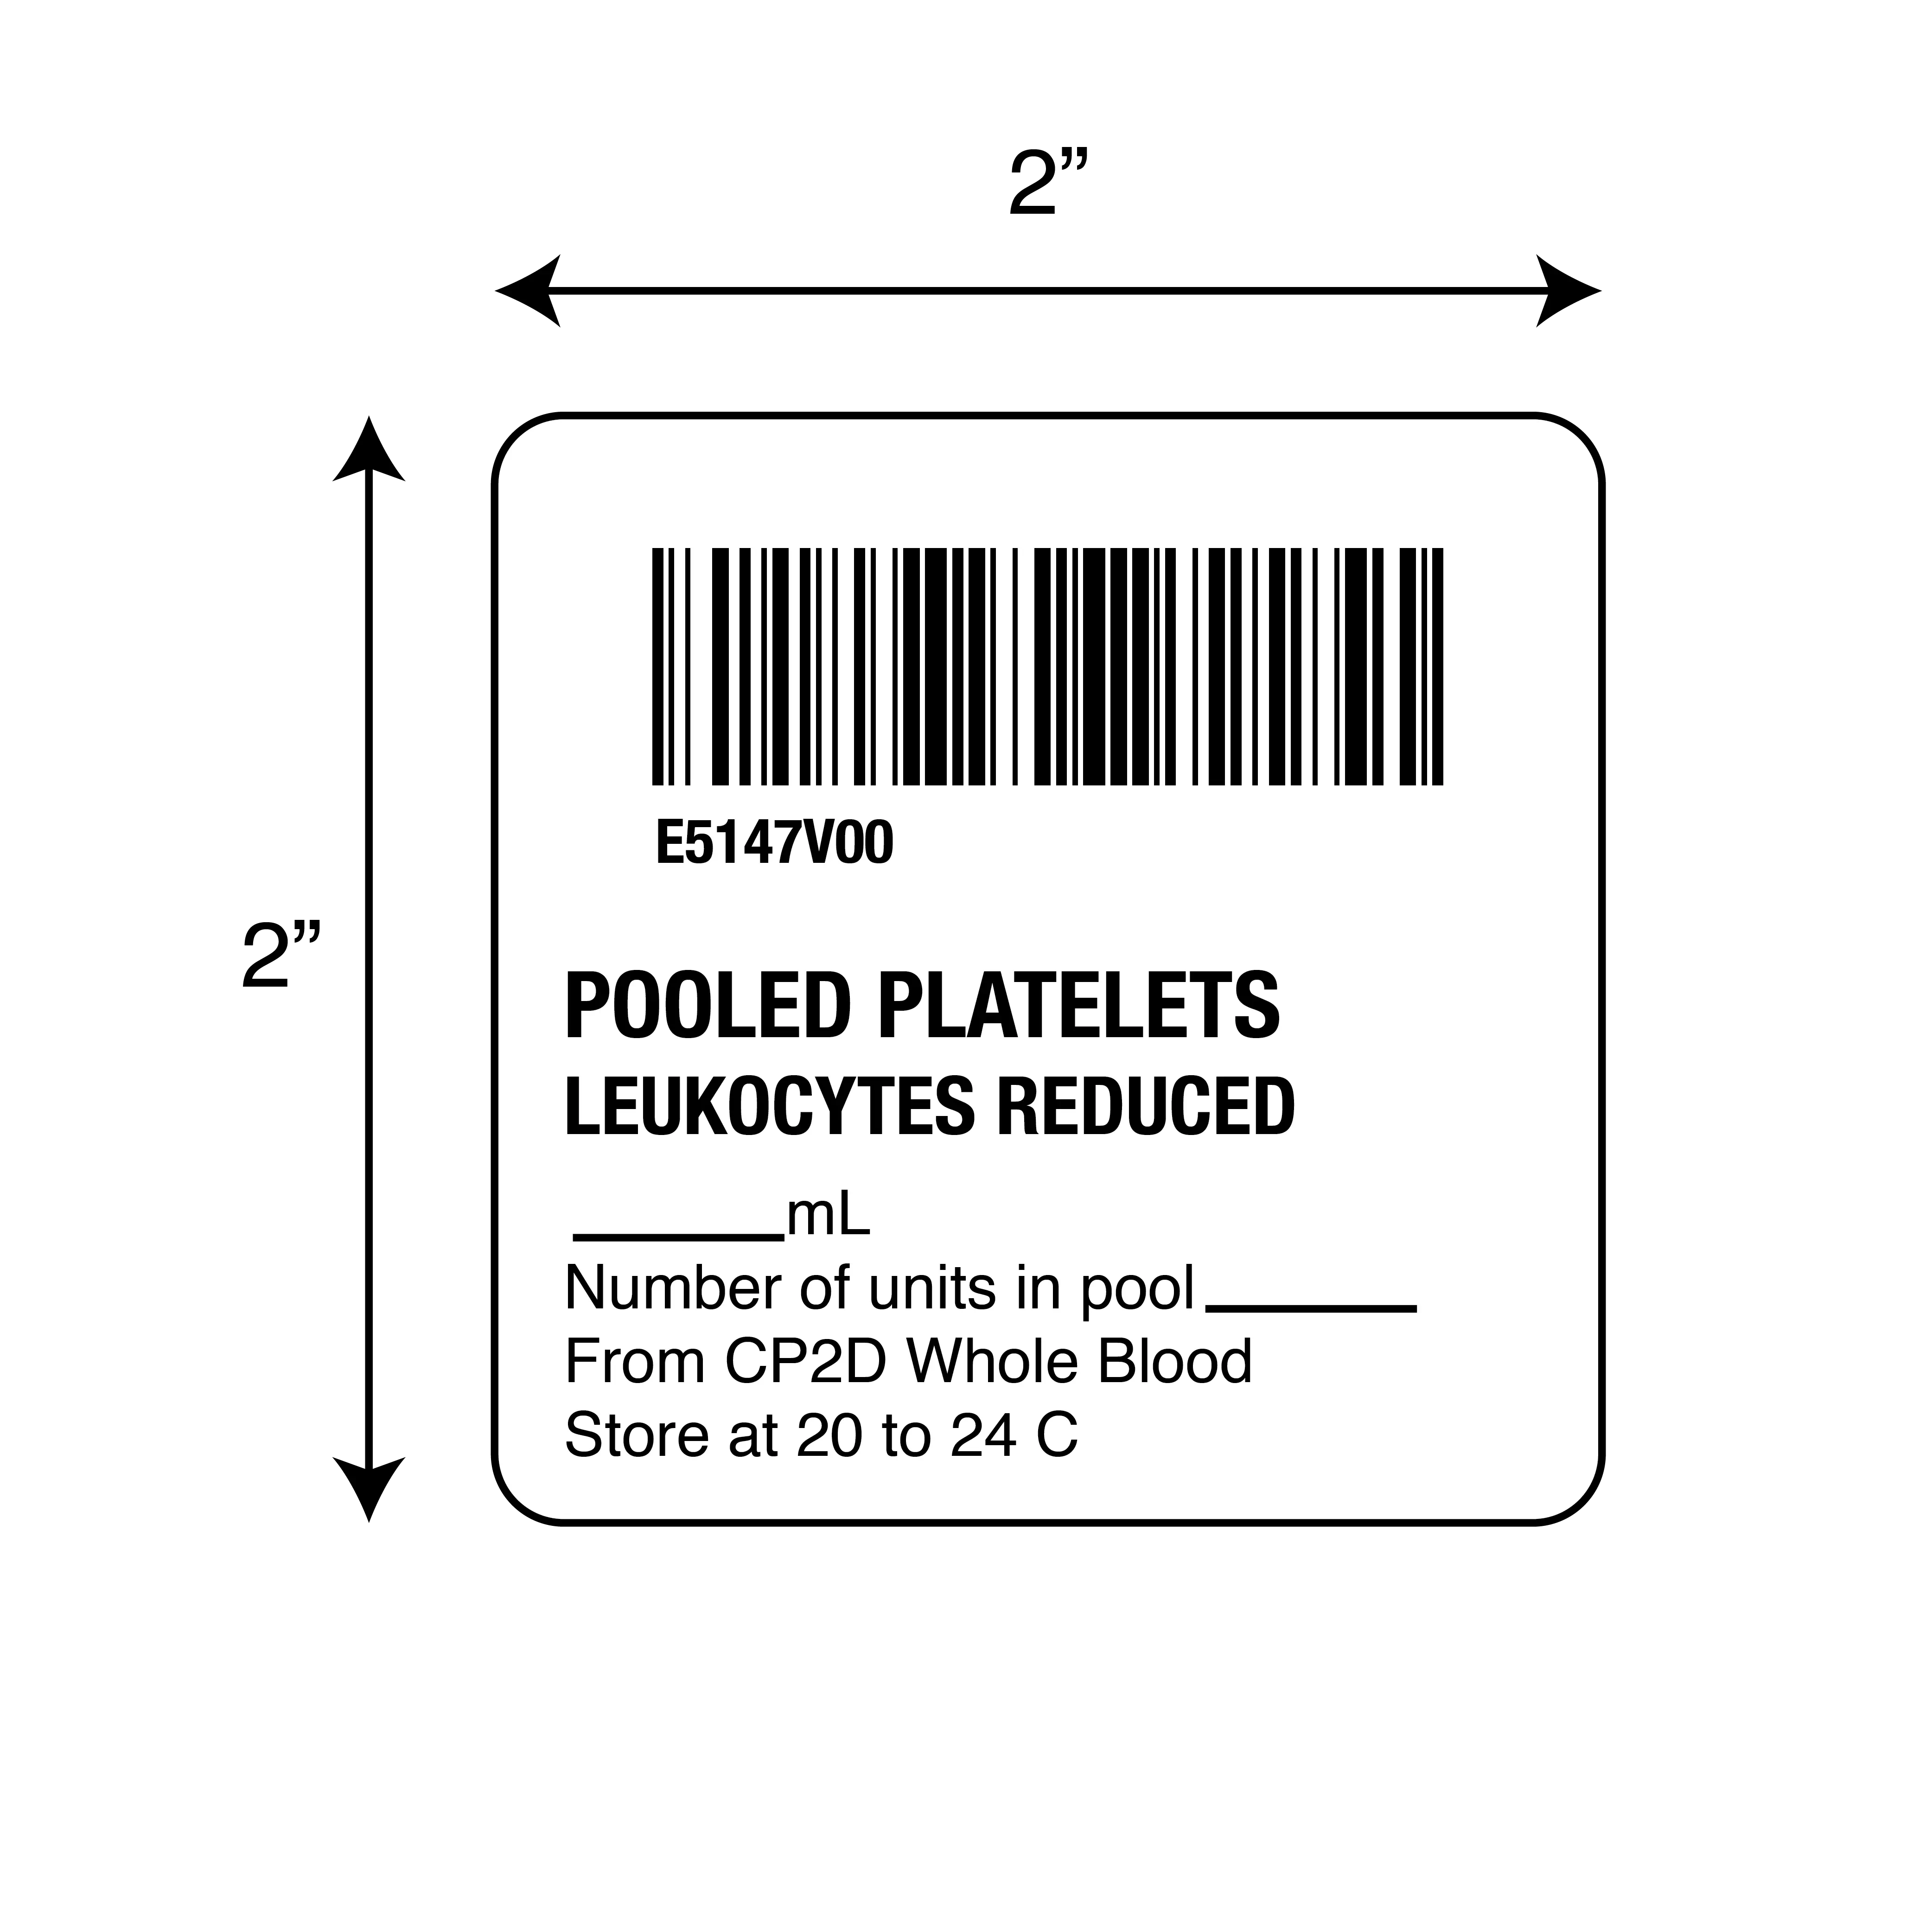 ISBT 128 Pooled Platelets Leukocytes Reduced